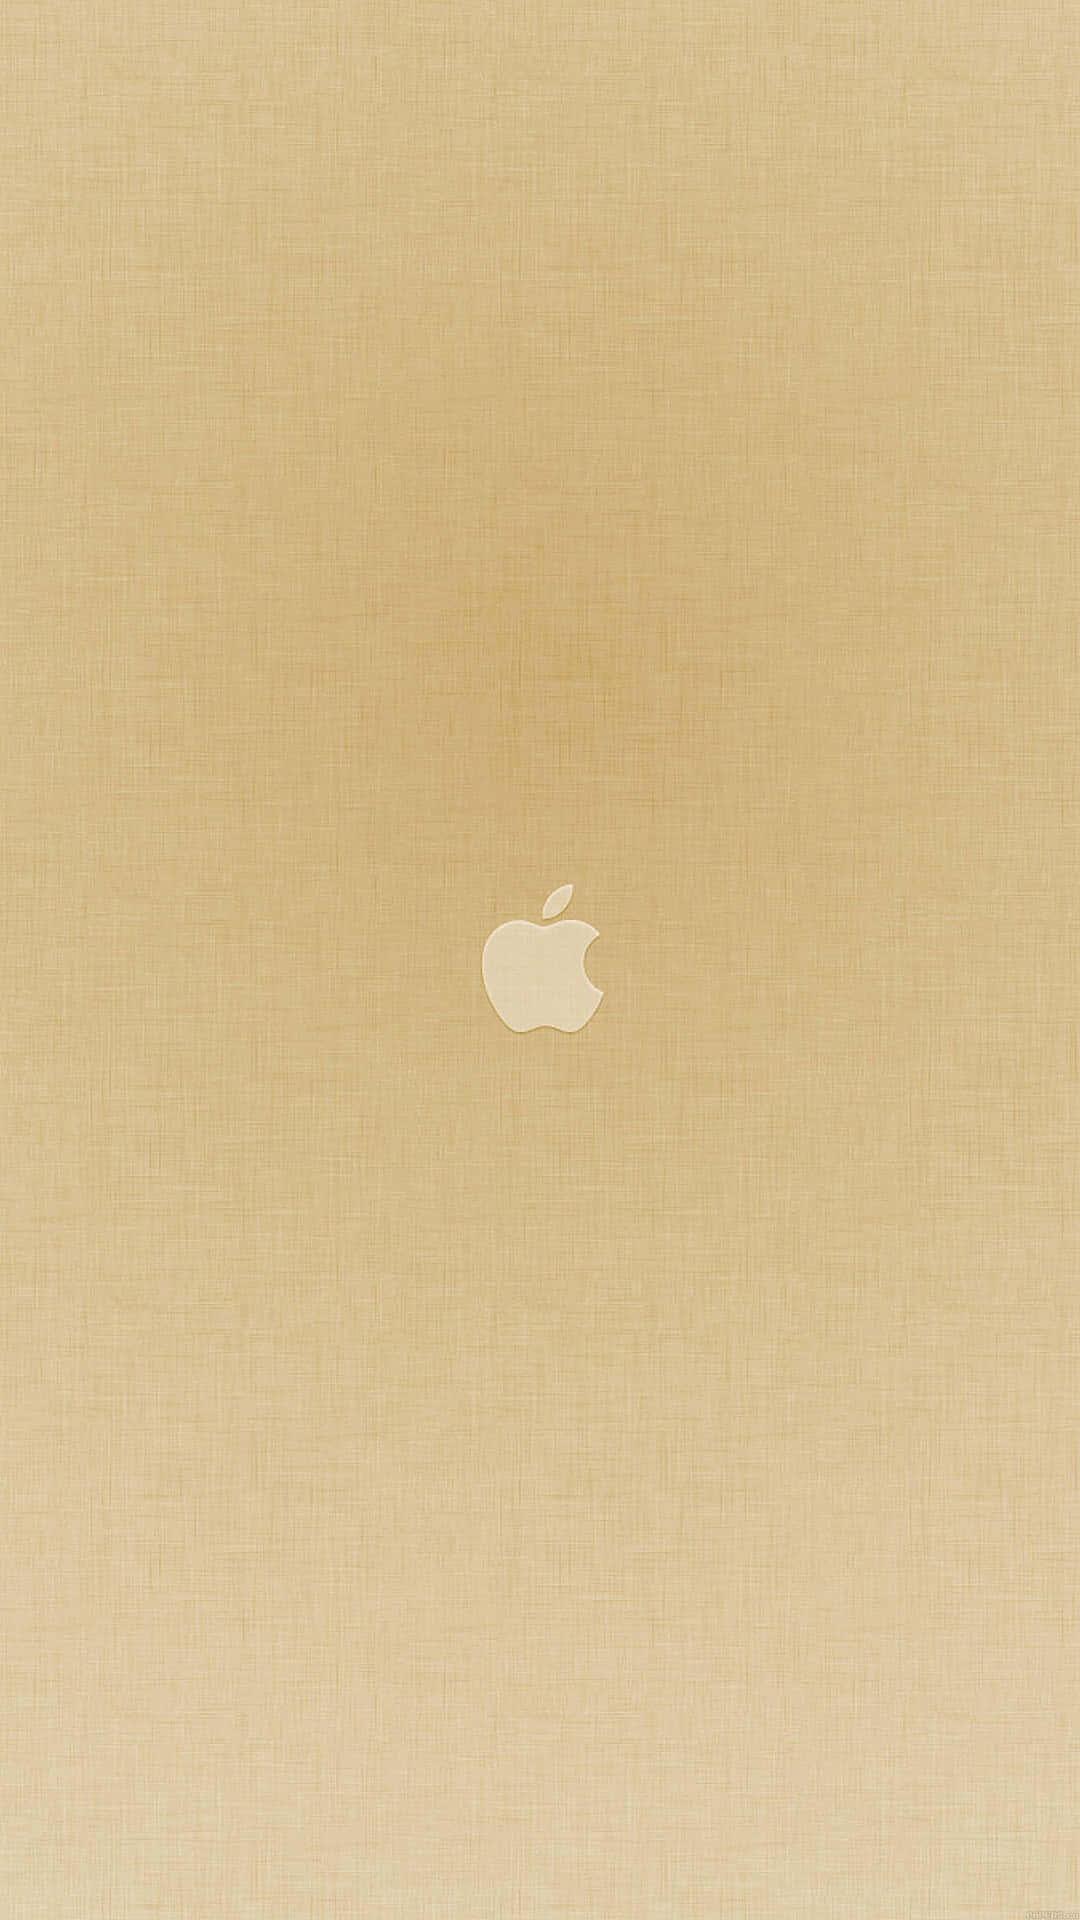 Shiny Gold Iphone Background